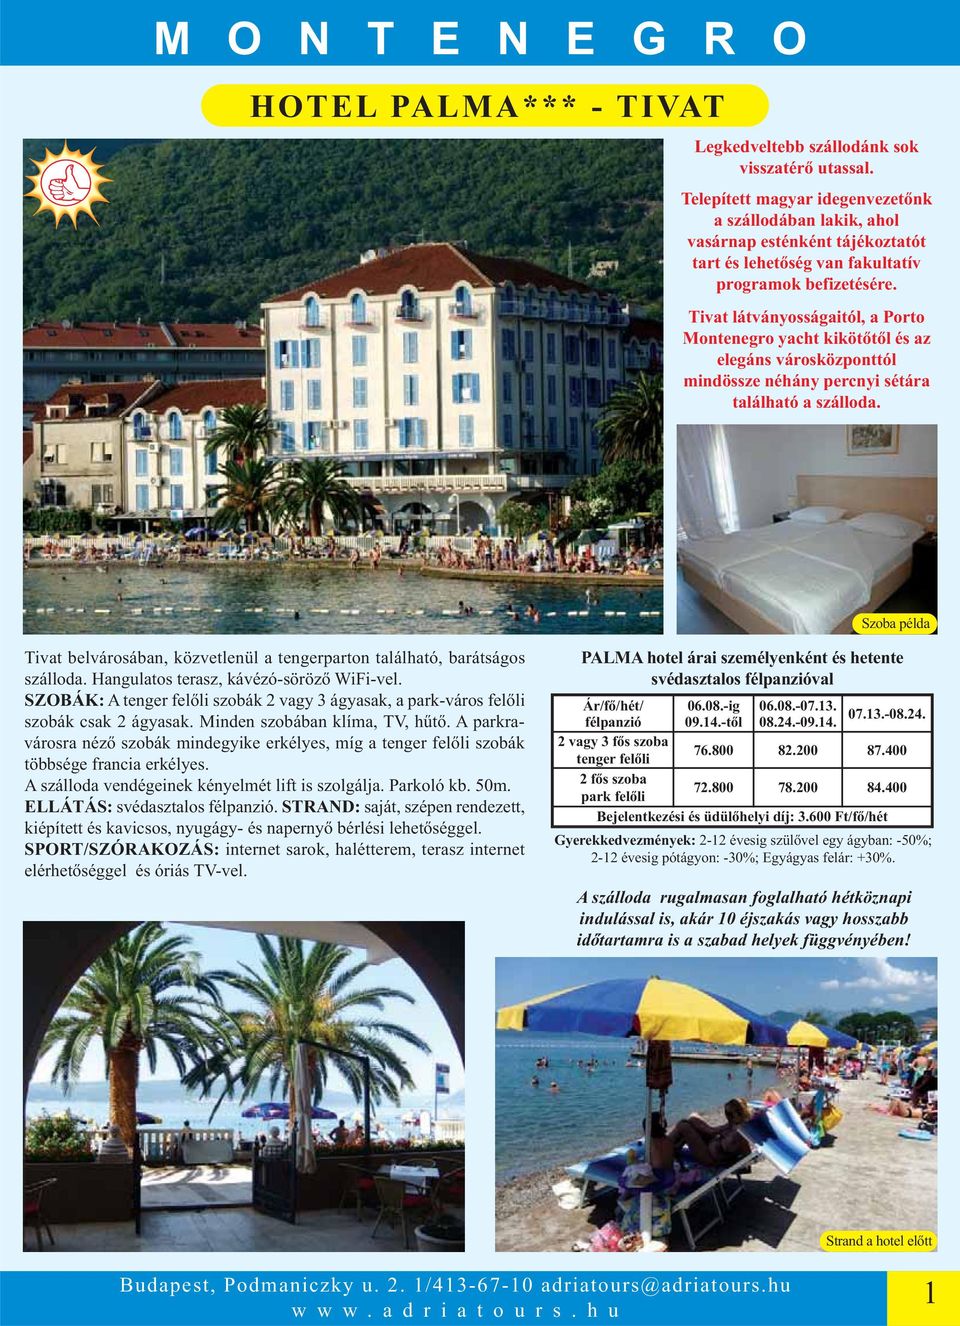 Tivat látványosságaitól, a Porto Montenegro yacht kikötőtől és az elegáns városközponttól mindössze néhány percnyi sétára található a szálloda.